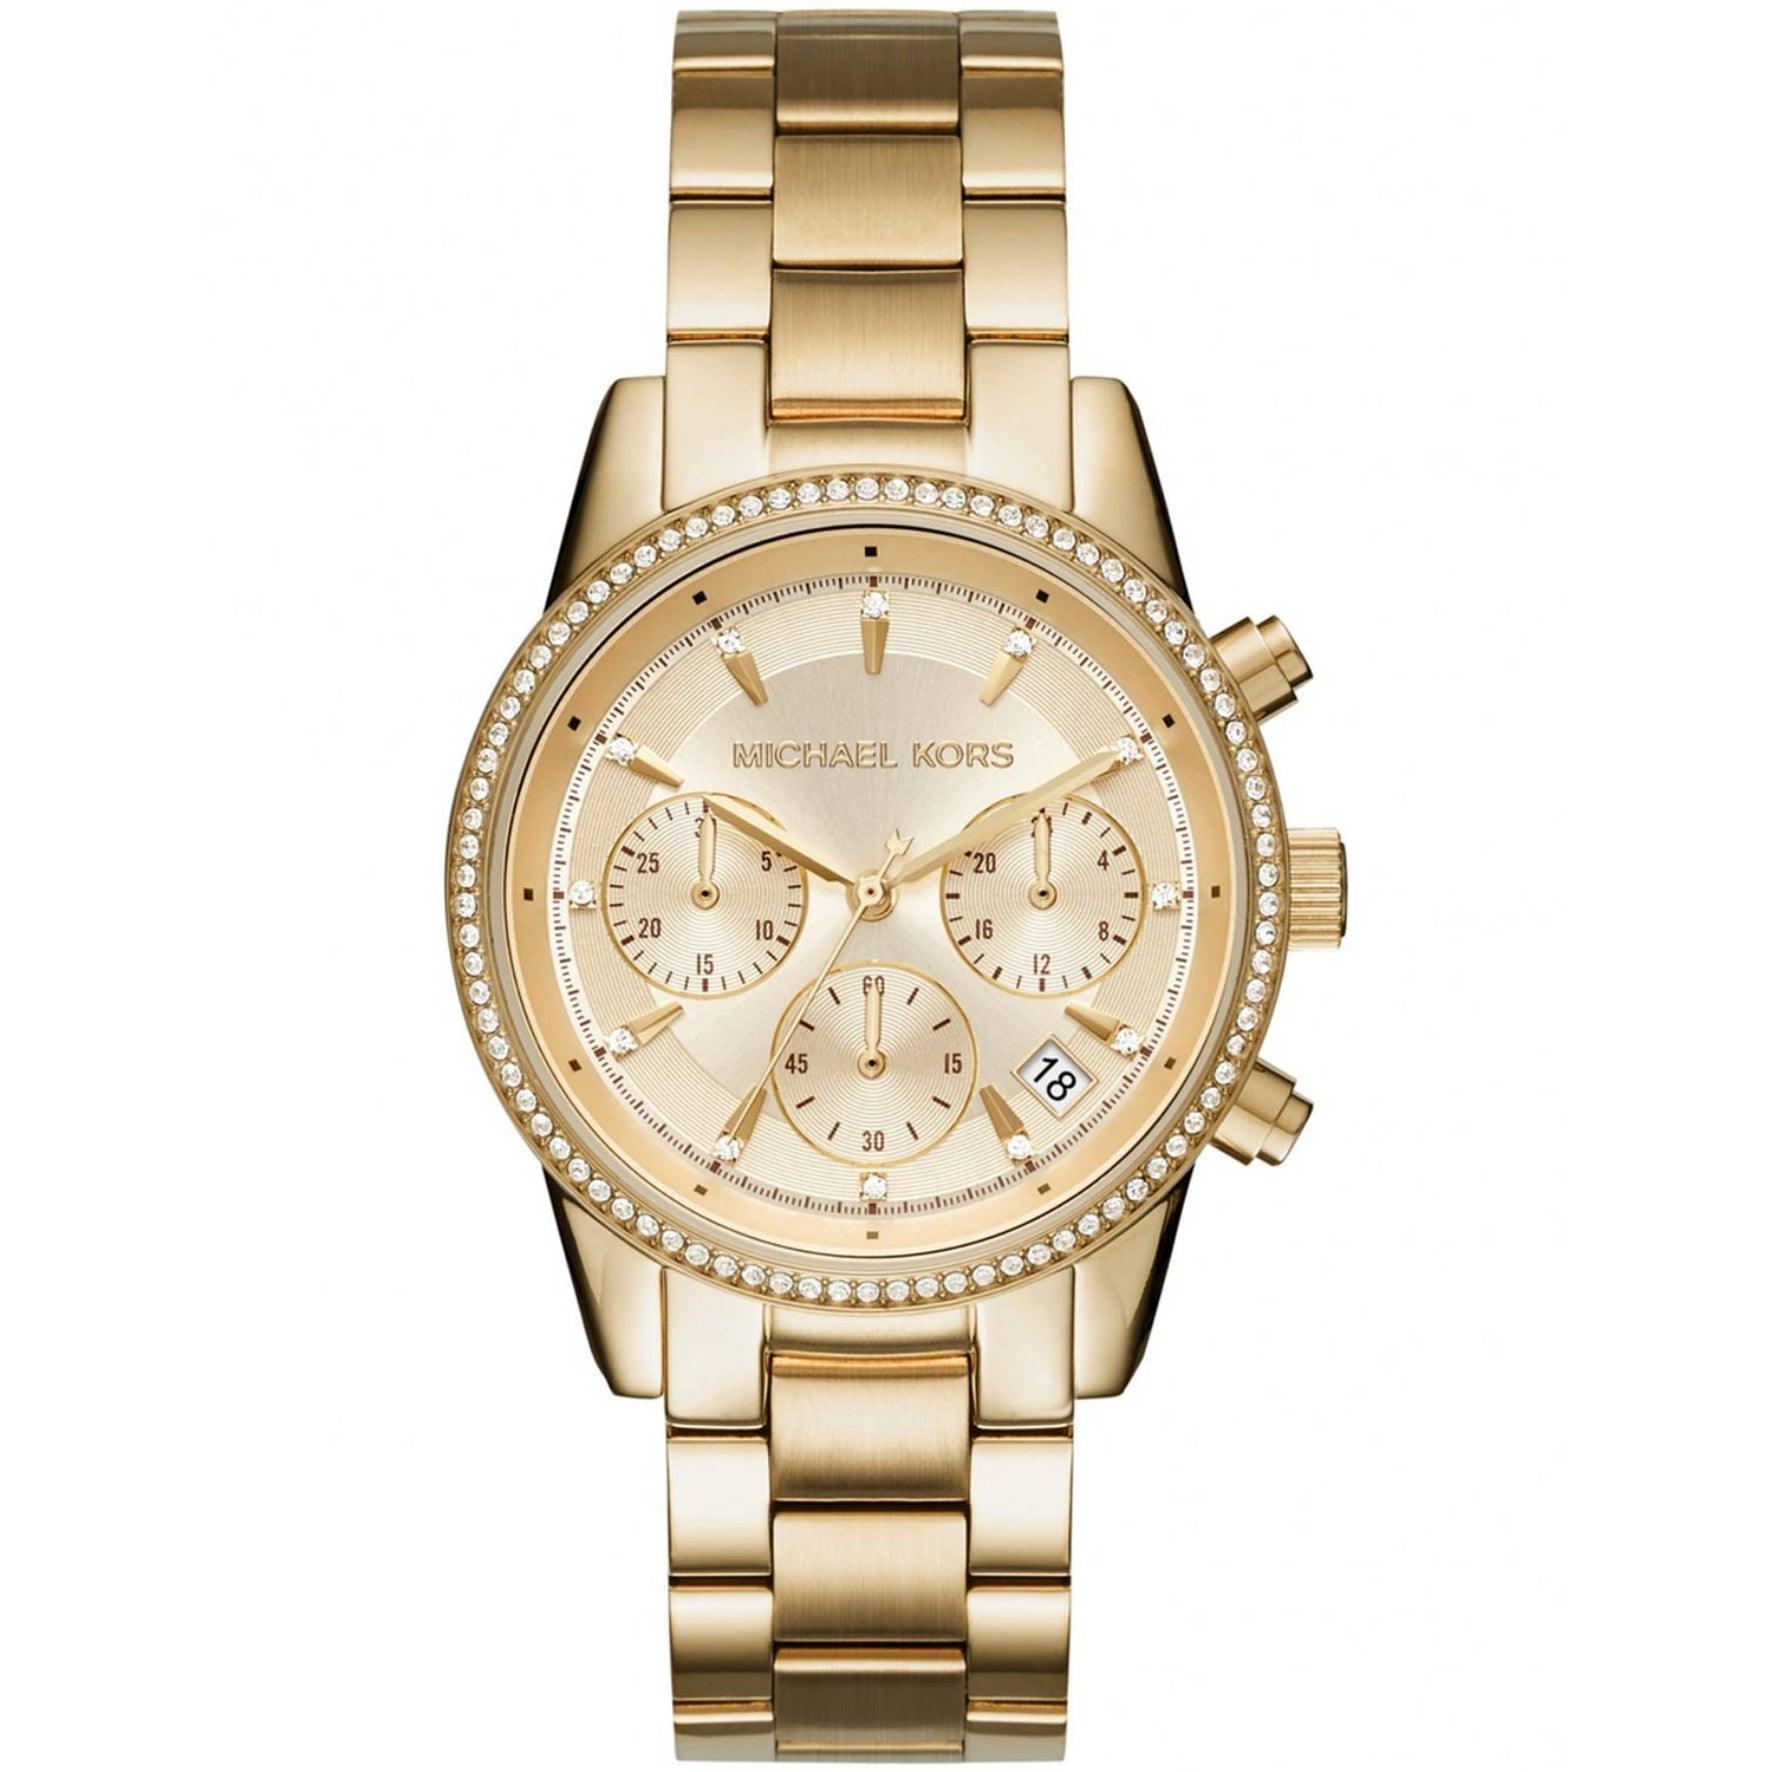 Γυναικείο ρολόι Michael Kors Ritz MK6356 χρονογράφος με ατσάλινο μπρασελέ σε χρυσό χρώμα χρυσό καντράν με ημερομηνία και στεφάνι 37mm με ζιργκόν.